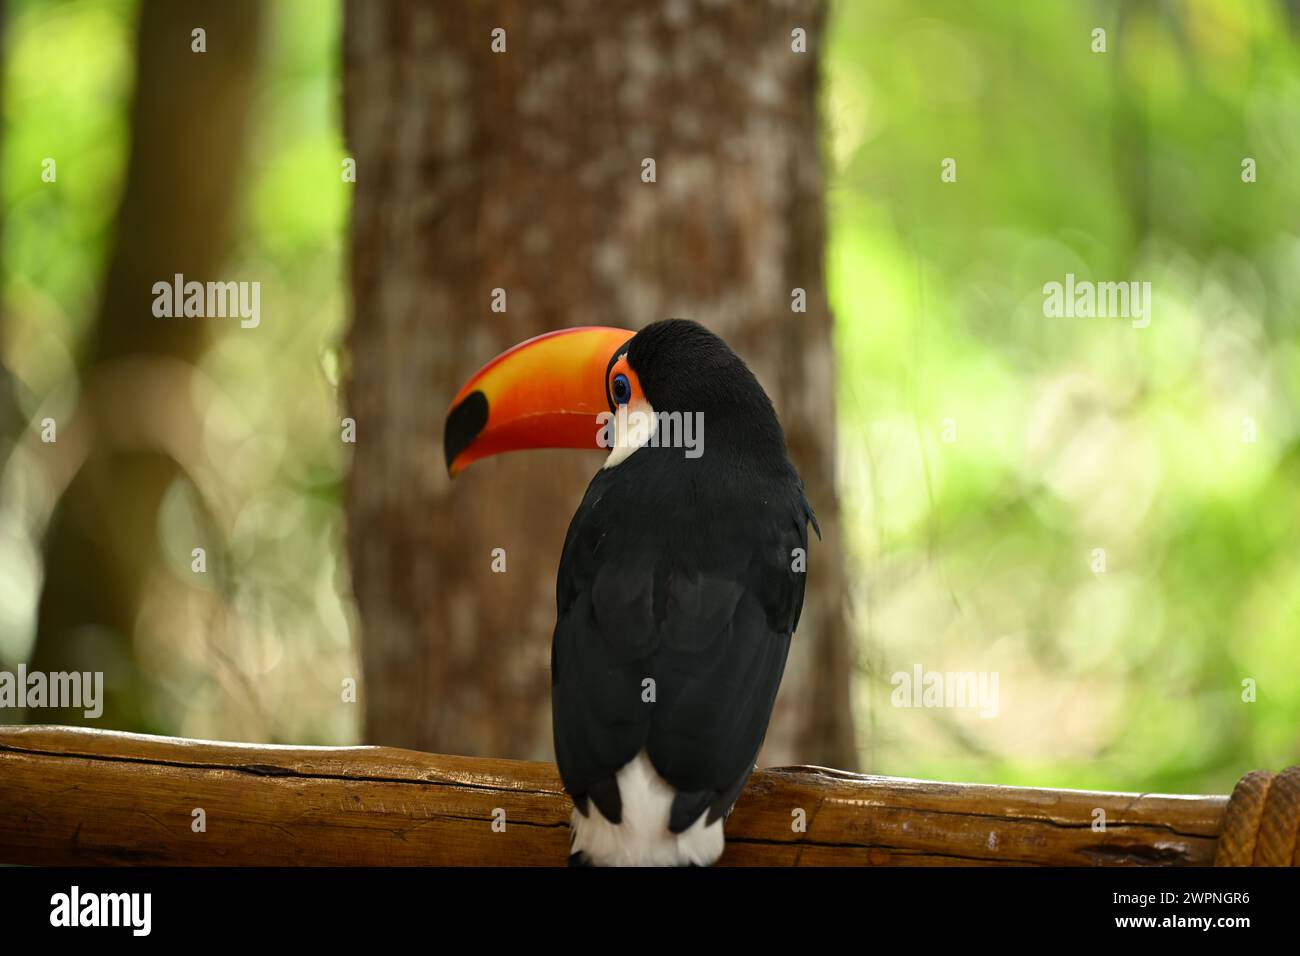 Black and white toucan with orange beak Stock Photo